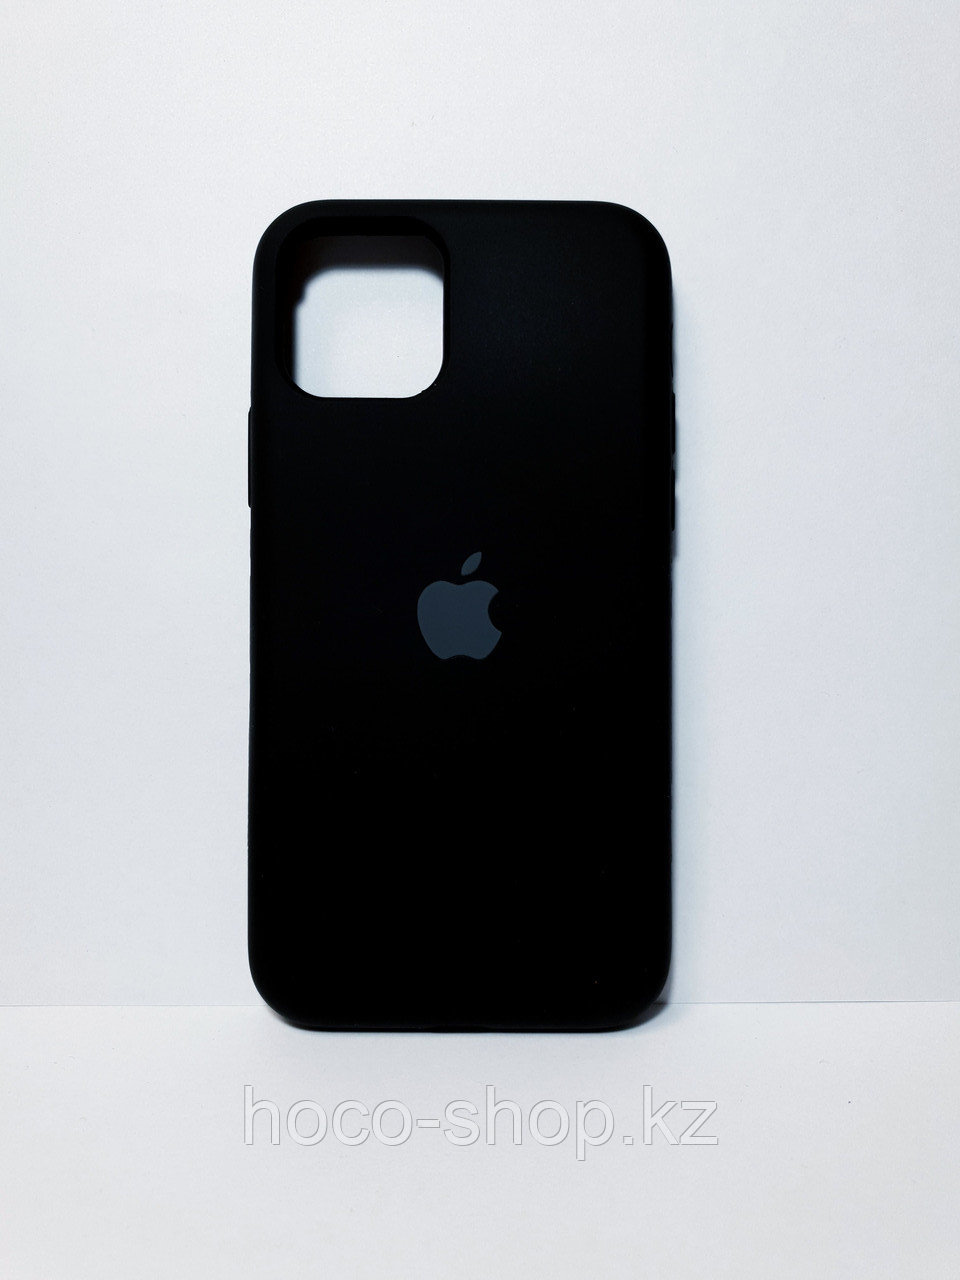 Защитный чехол для iPhone 11 Pro Soft Touch силиконовый, черный